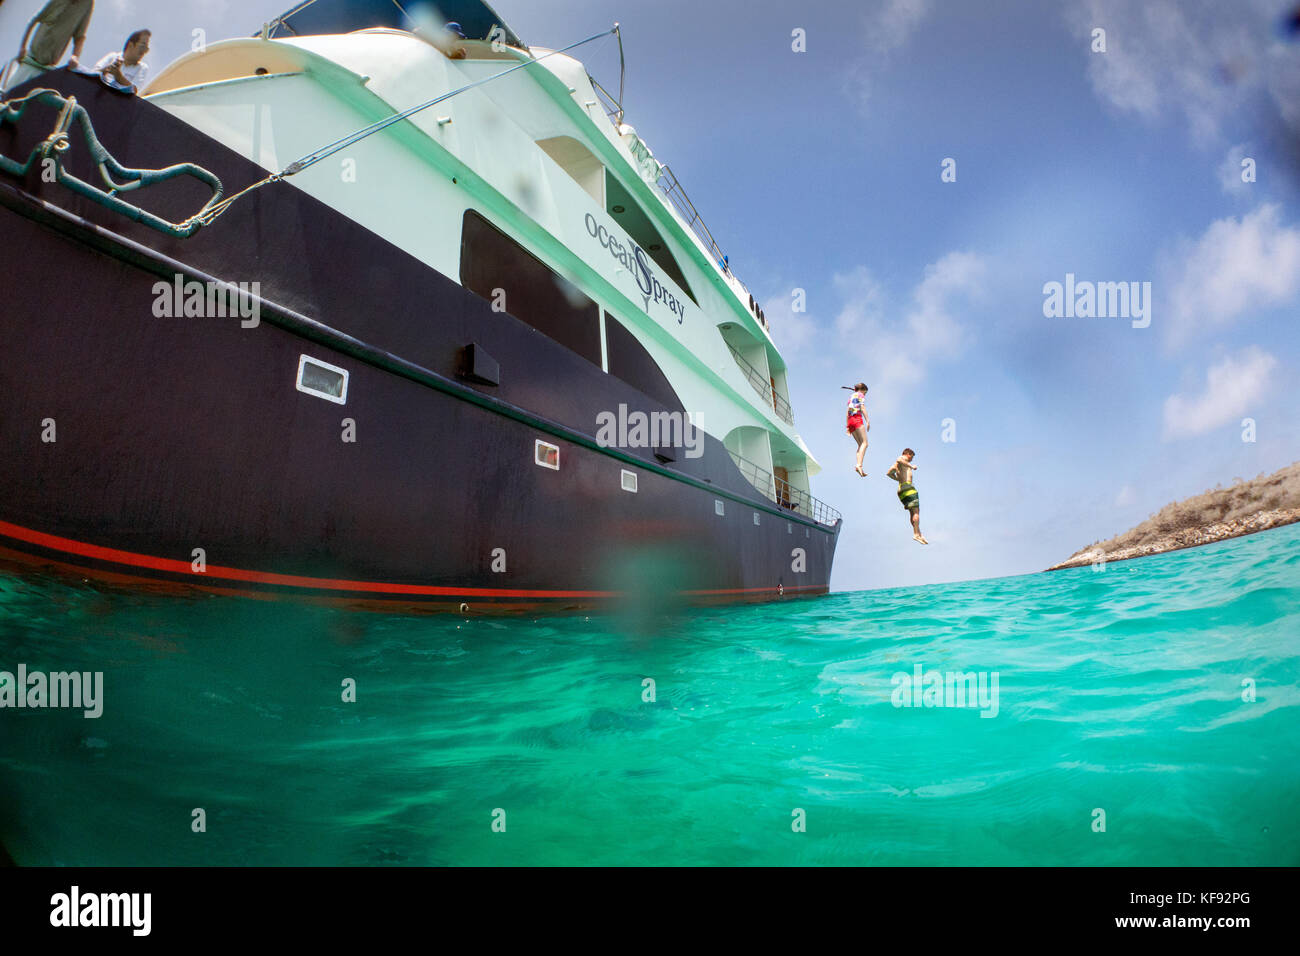 Isole Galapagos, ecuador, individui salta fuori il m/c ocean spray nelle acque vicino a South plaza island off se costa di santa cruz Foto Stock